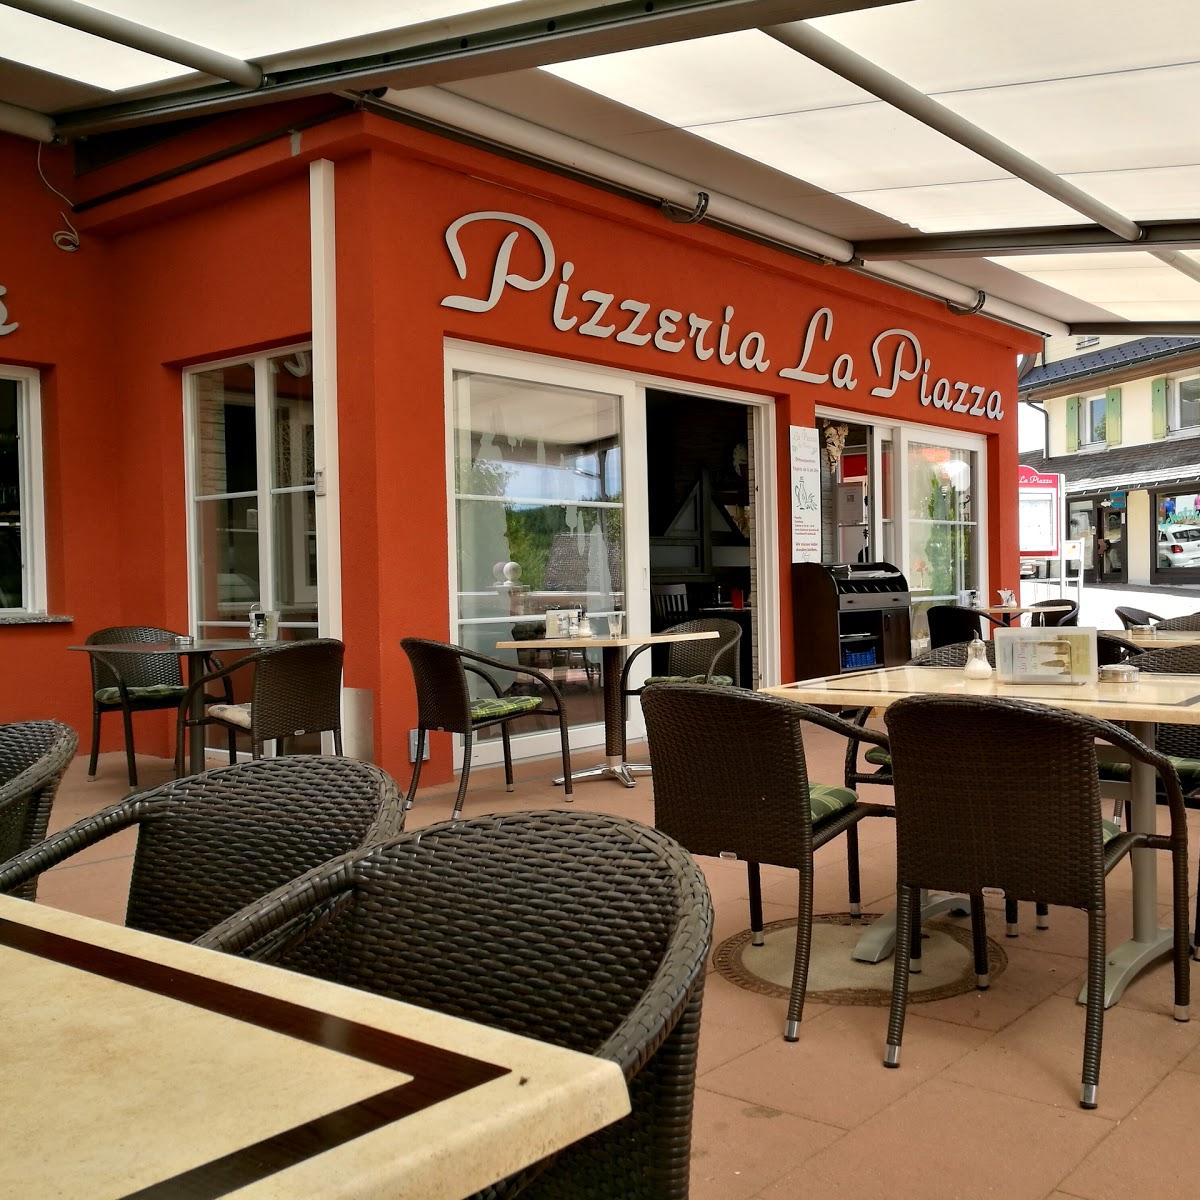 Restaurant "La Piazza" in Schluchsee